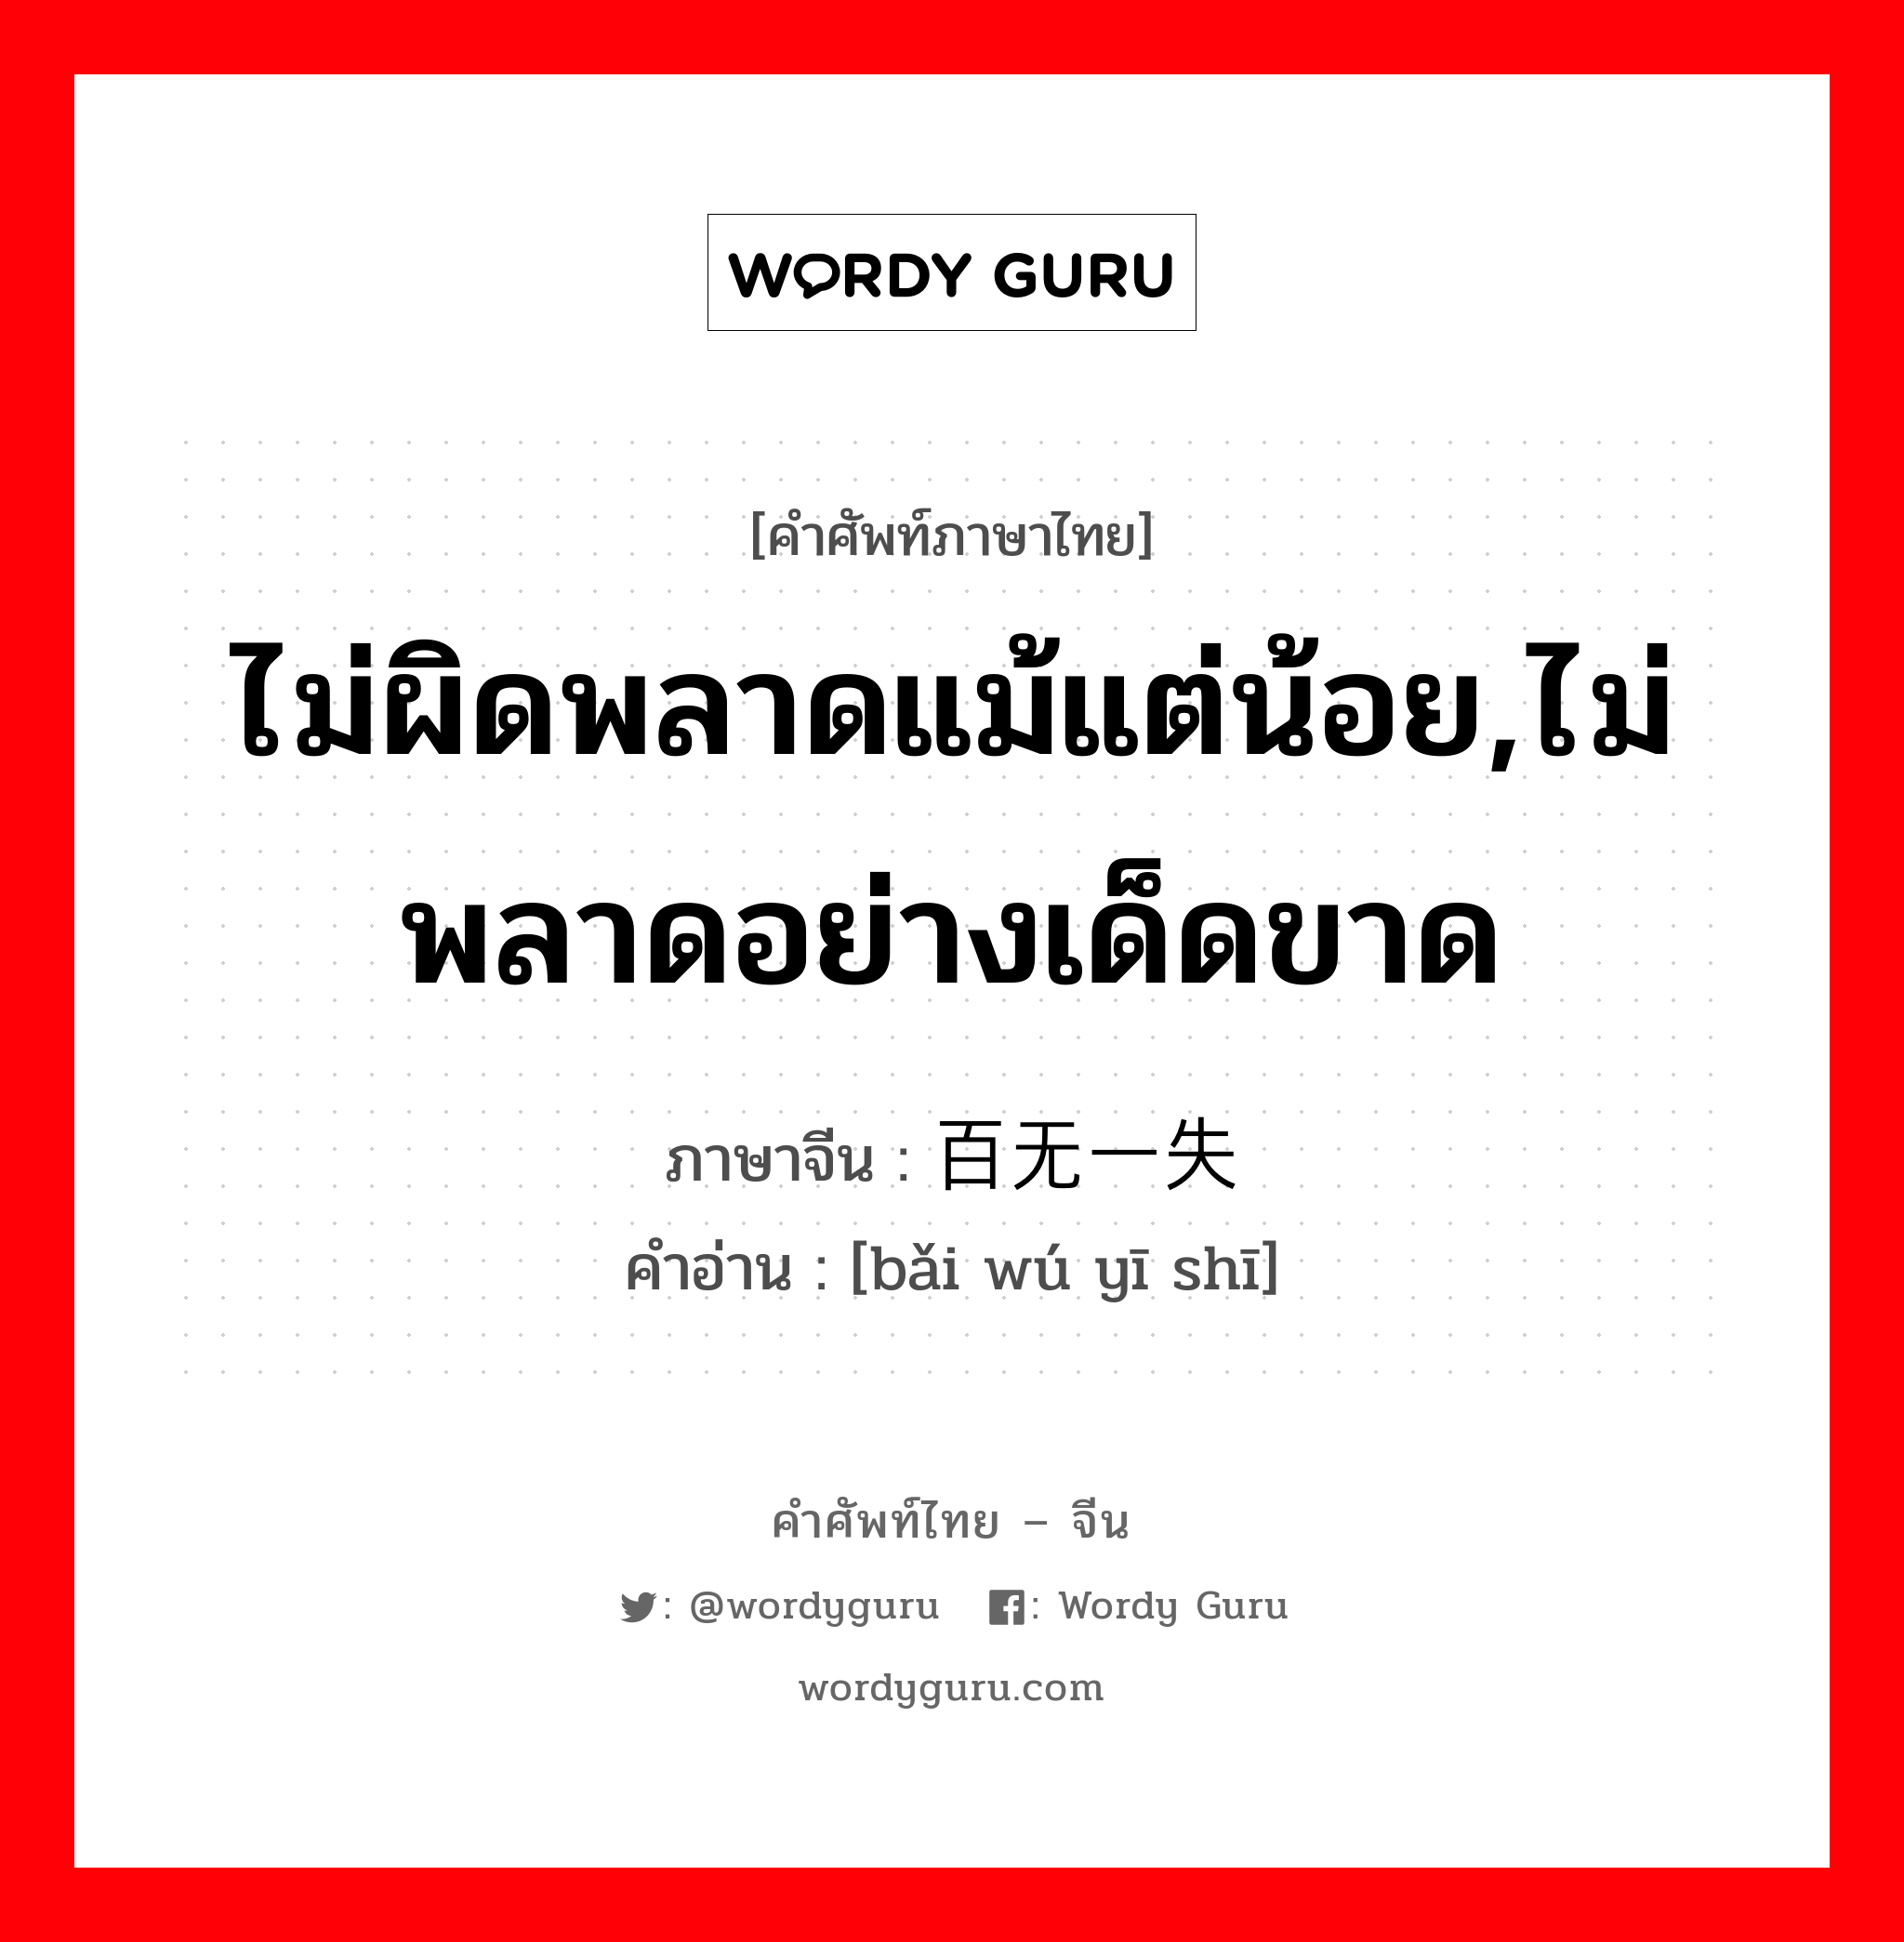 ไม่ผิดพลาดแม้แต่น้อย,ไม่พลาดอย่างเด็ดขาด ภาษาจีนคืออะไร, คำศัพท์ภาษาไทย - จีน ไม่ผิดพลาดแม้แต่น้อย,ไม่พลาดอย่างเด็ดขาด ภาษาจีน 百无一失 คำอ่าน [bǎi wú yī shī]